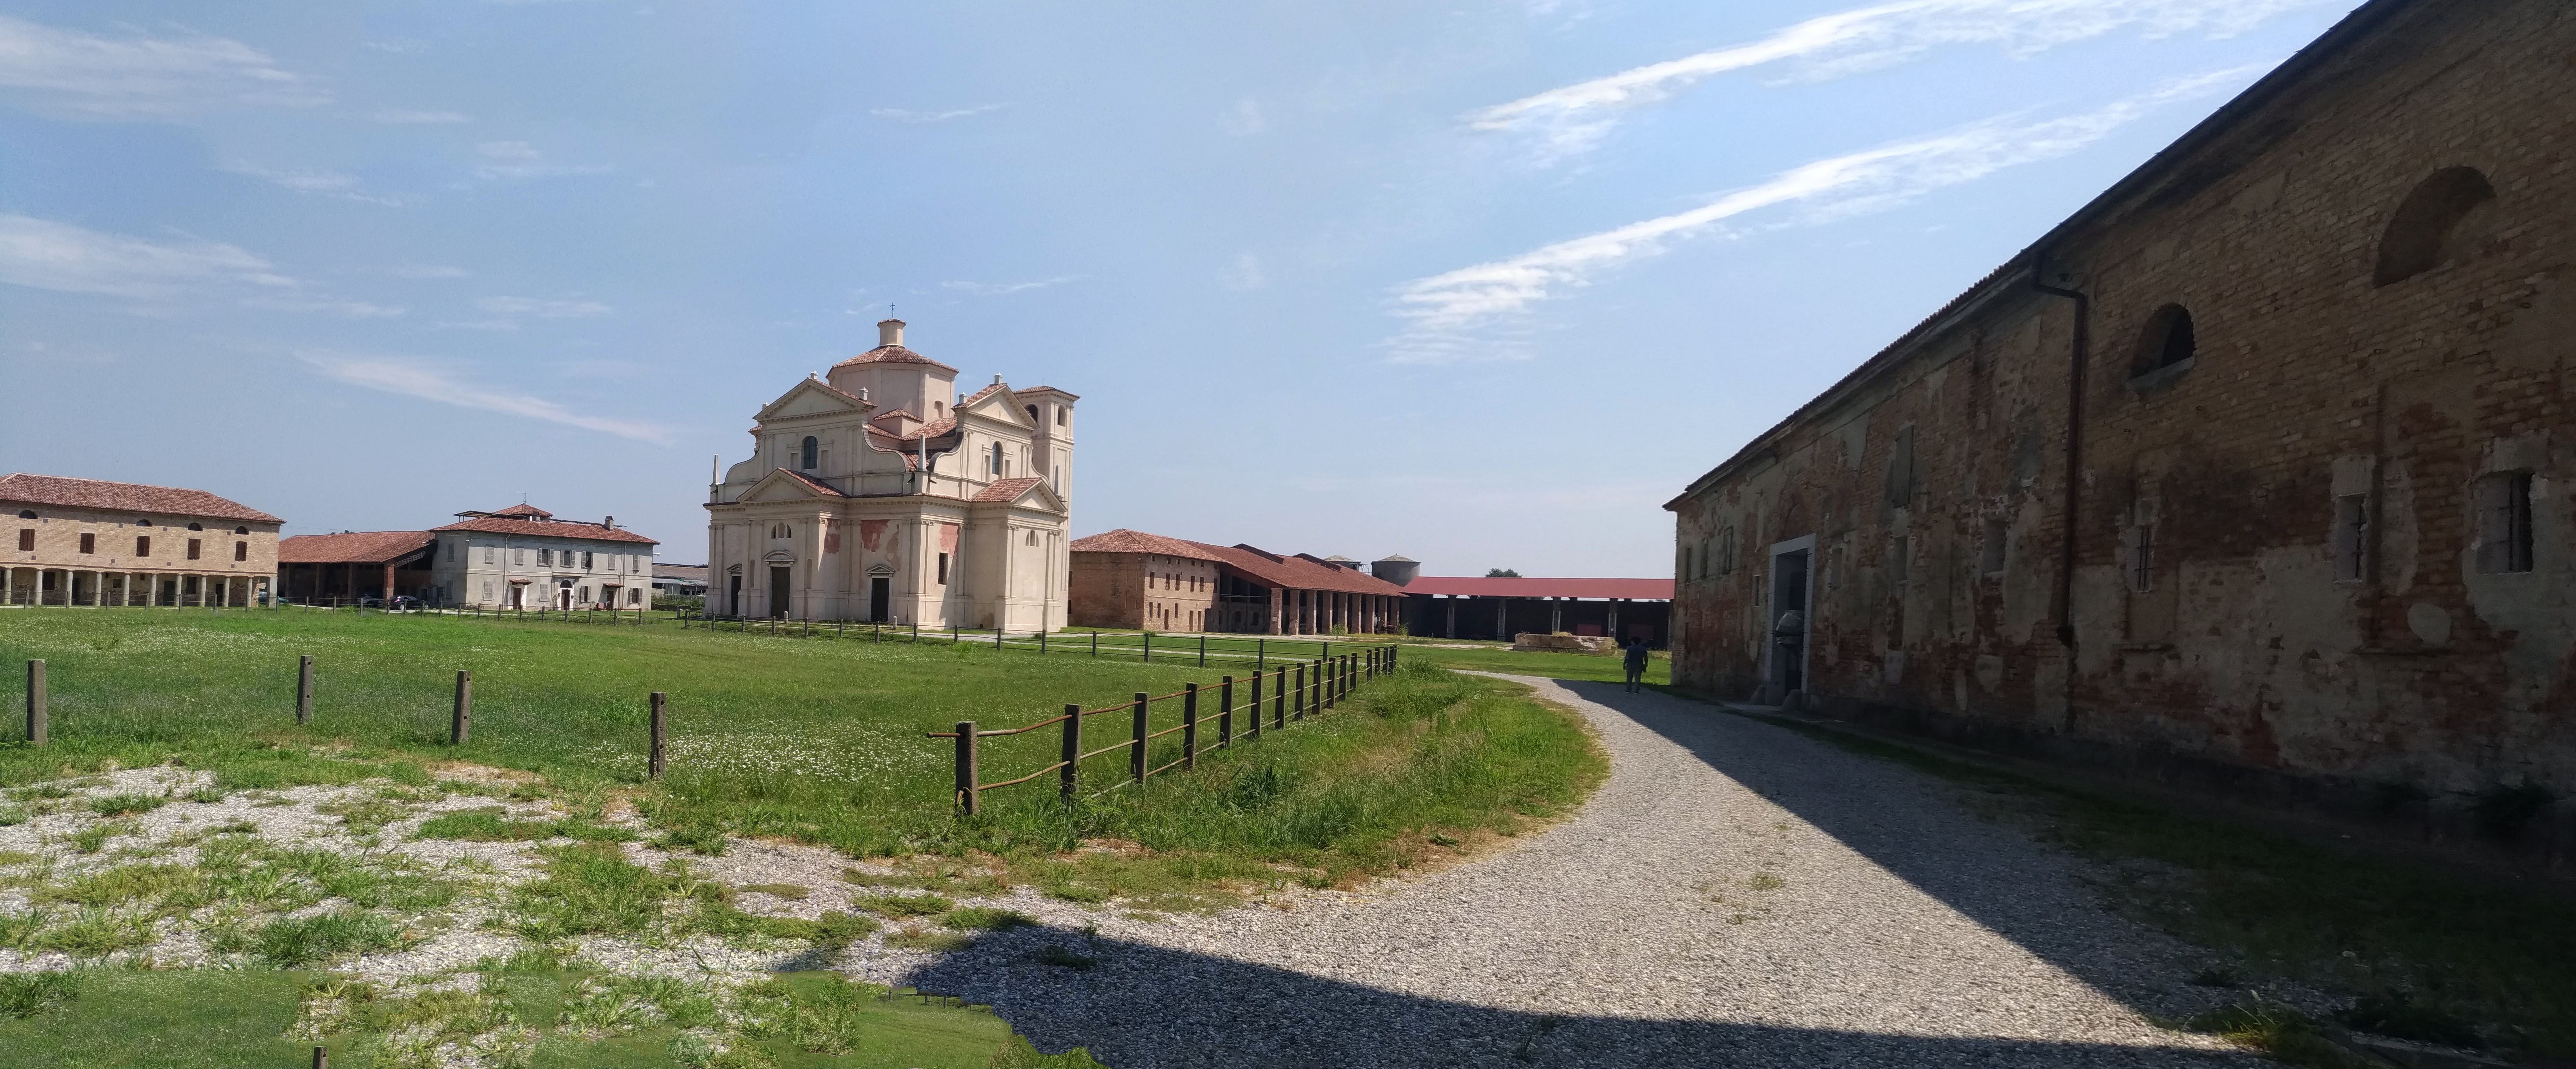 Complesso di Santa Maria del Campo (monastero) - Cremona (CR) 